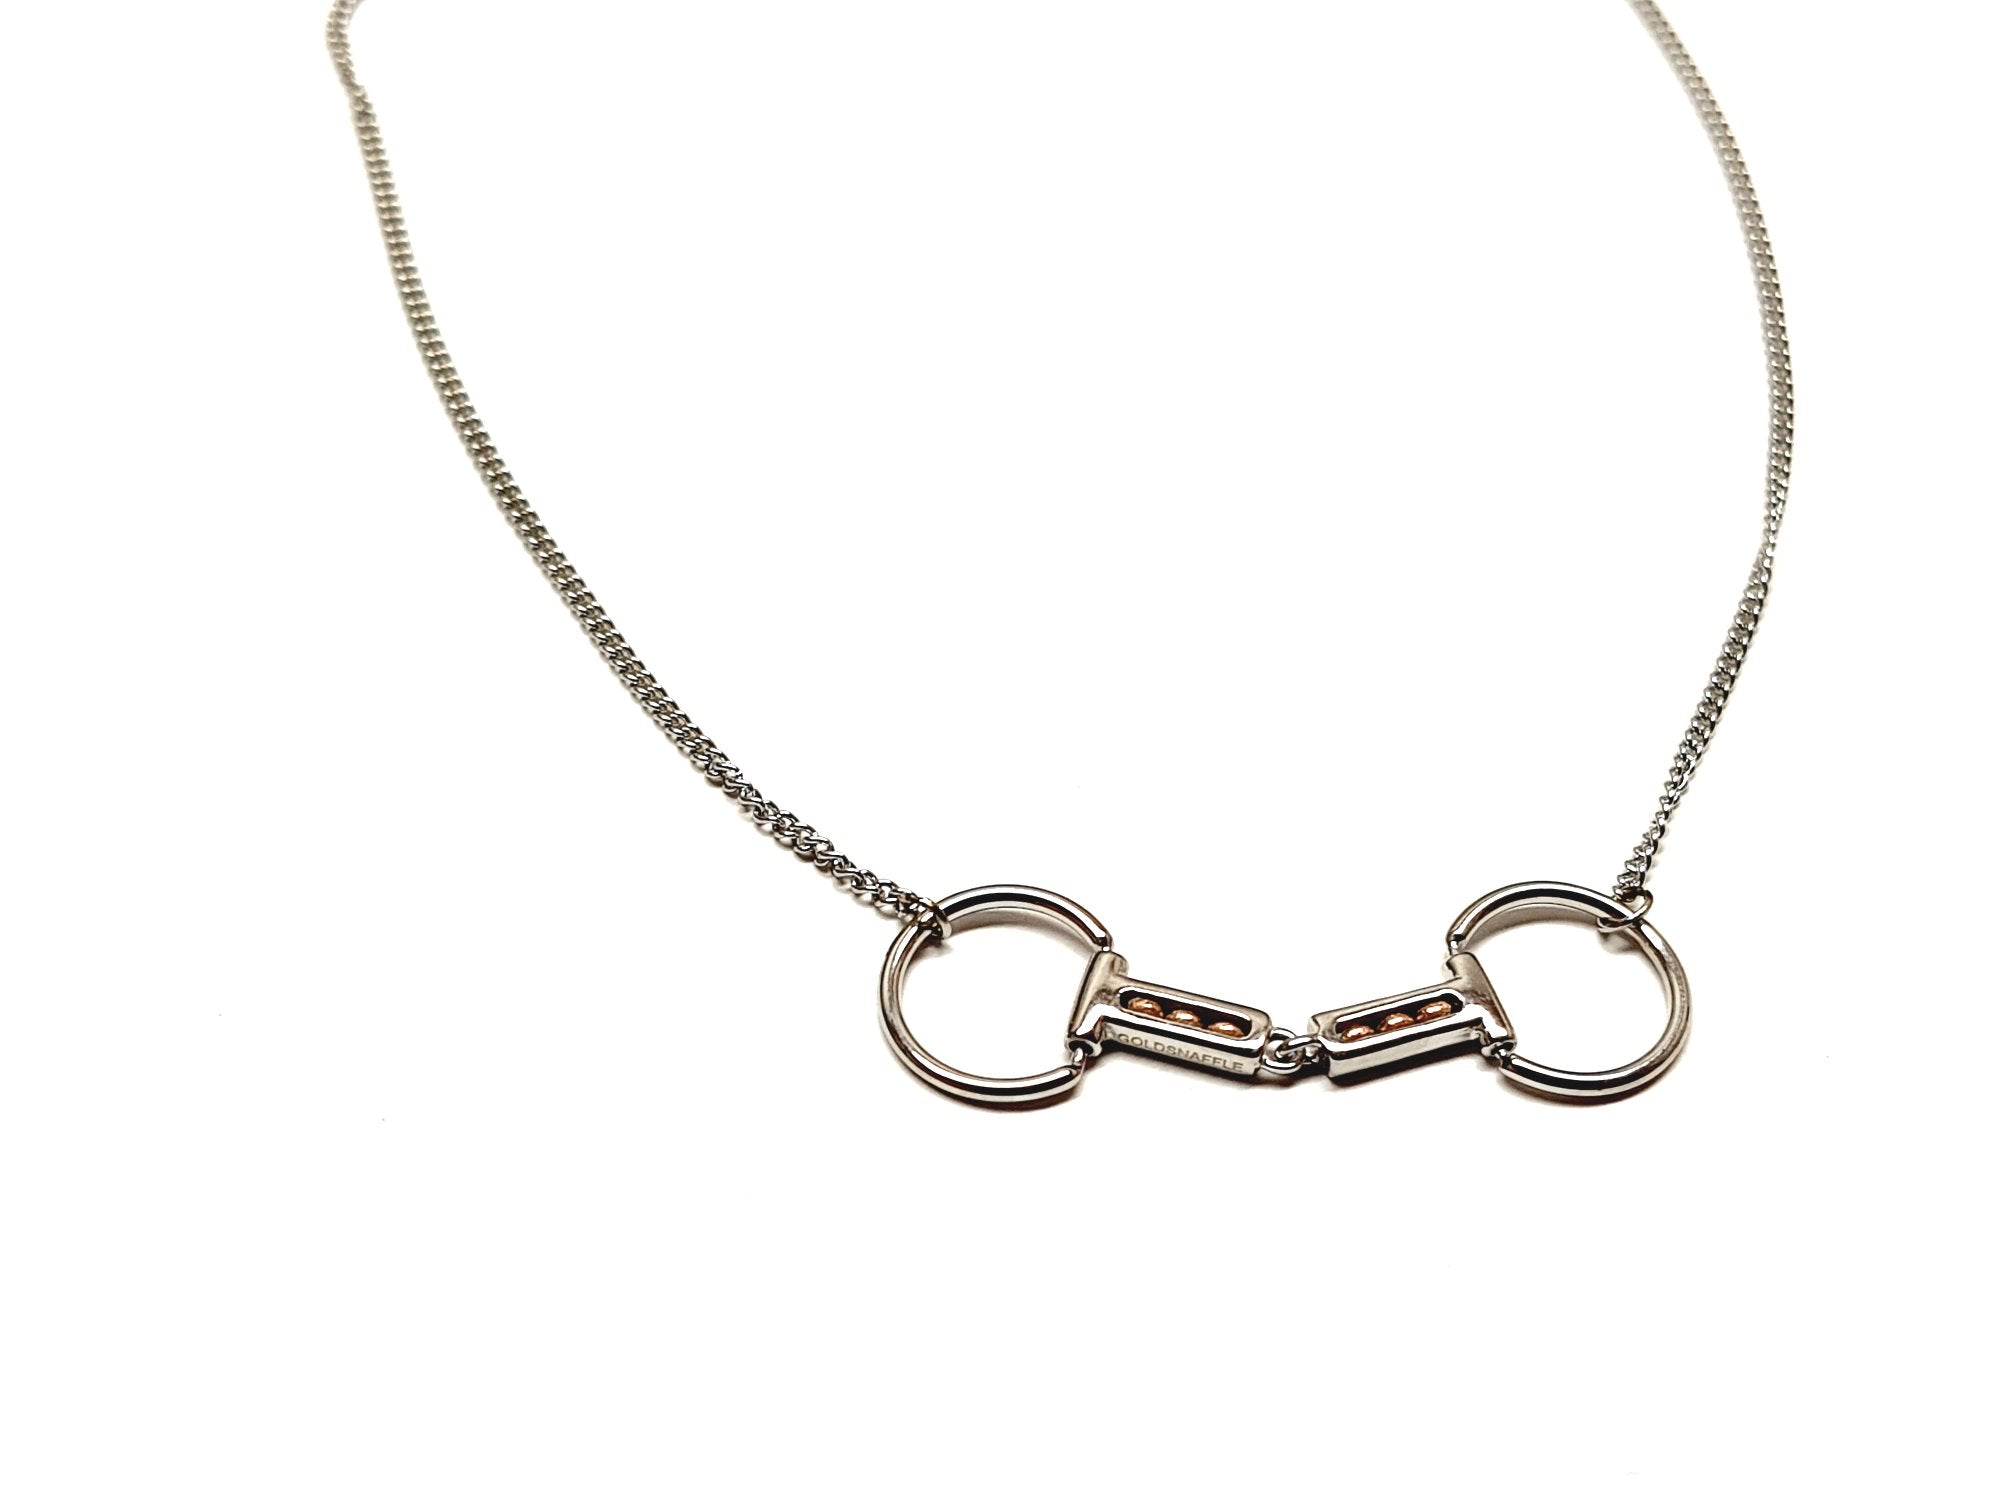 Ring bit copper roller necklace or bracelet